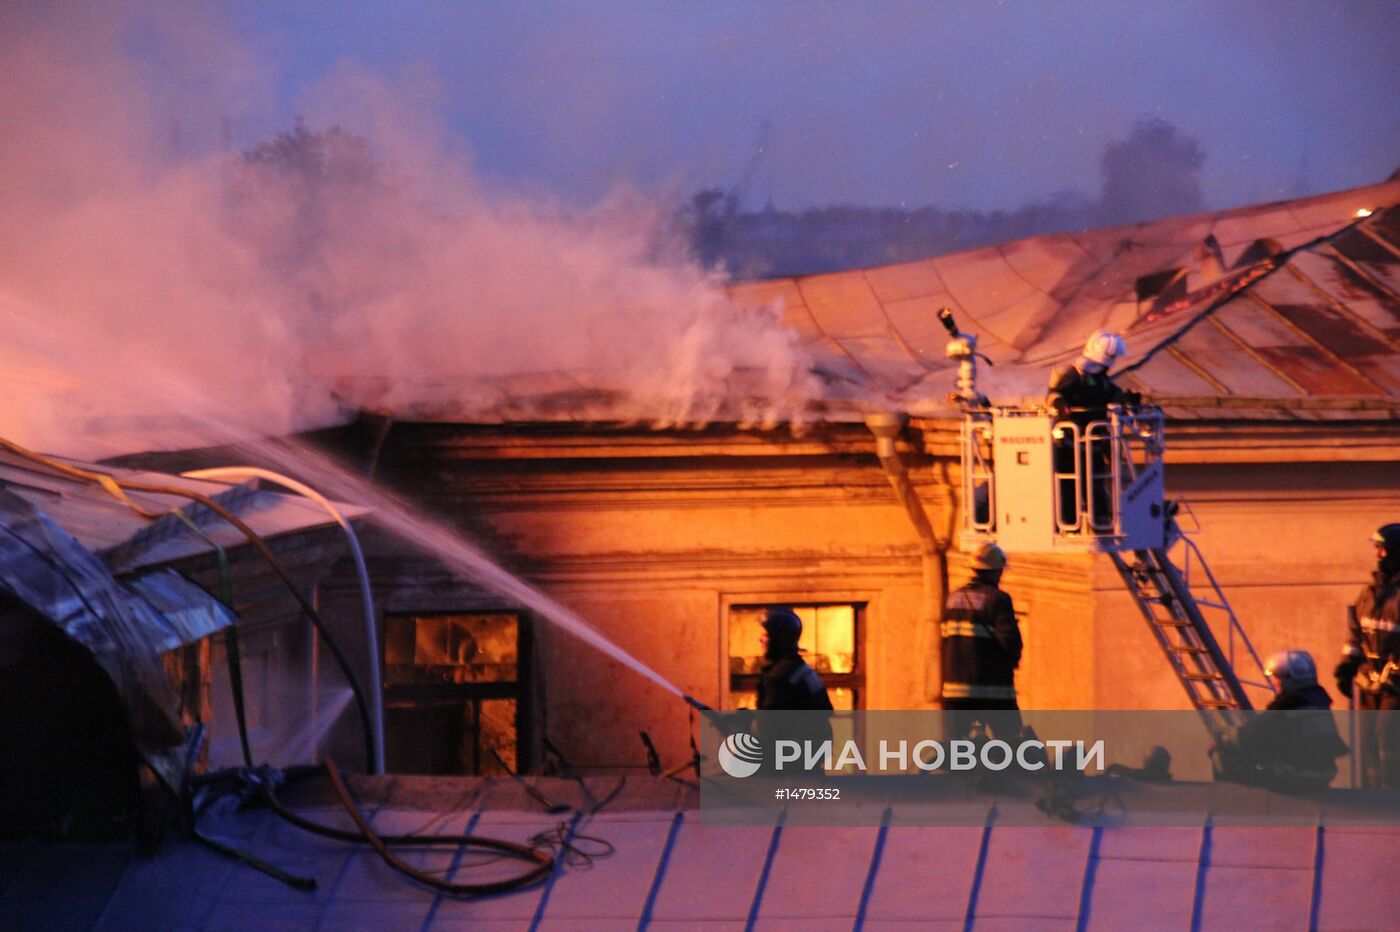 Пожар в Технологическом институте в Санкт-Петербурге